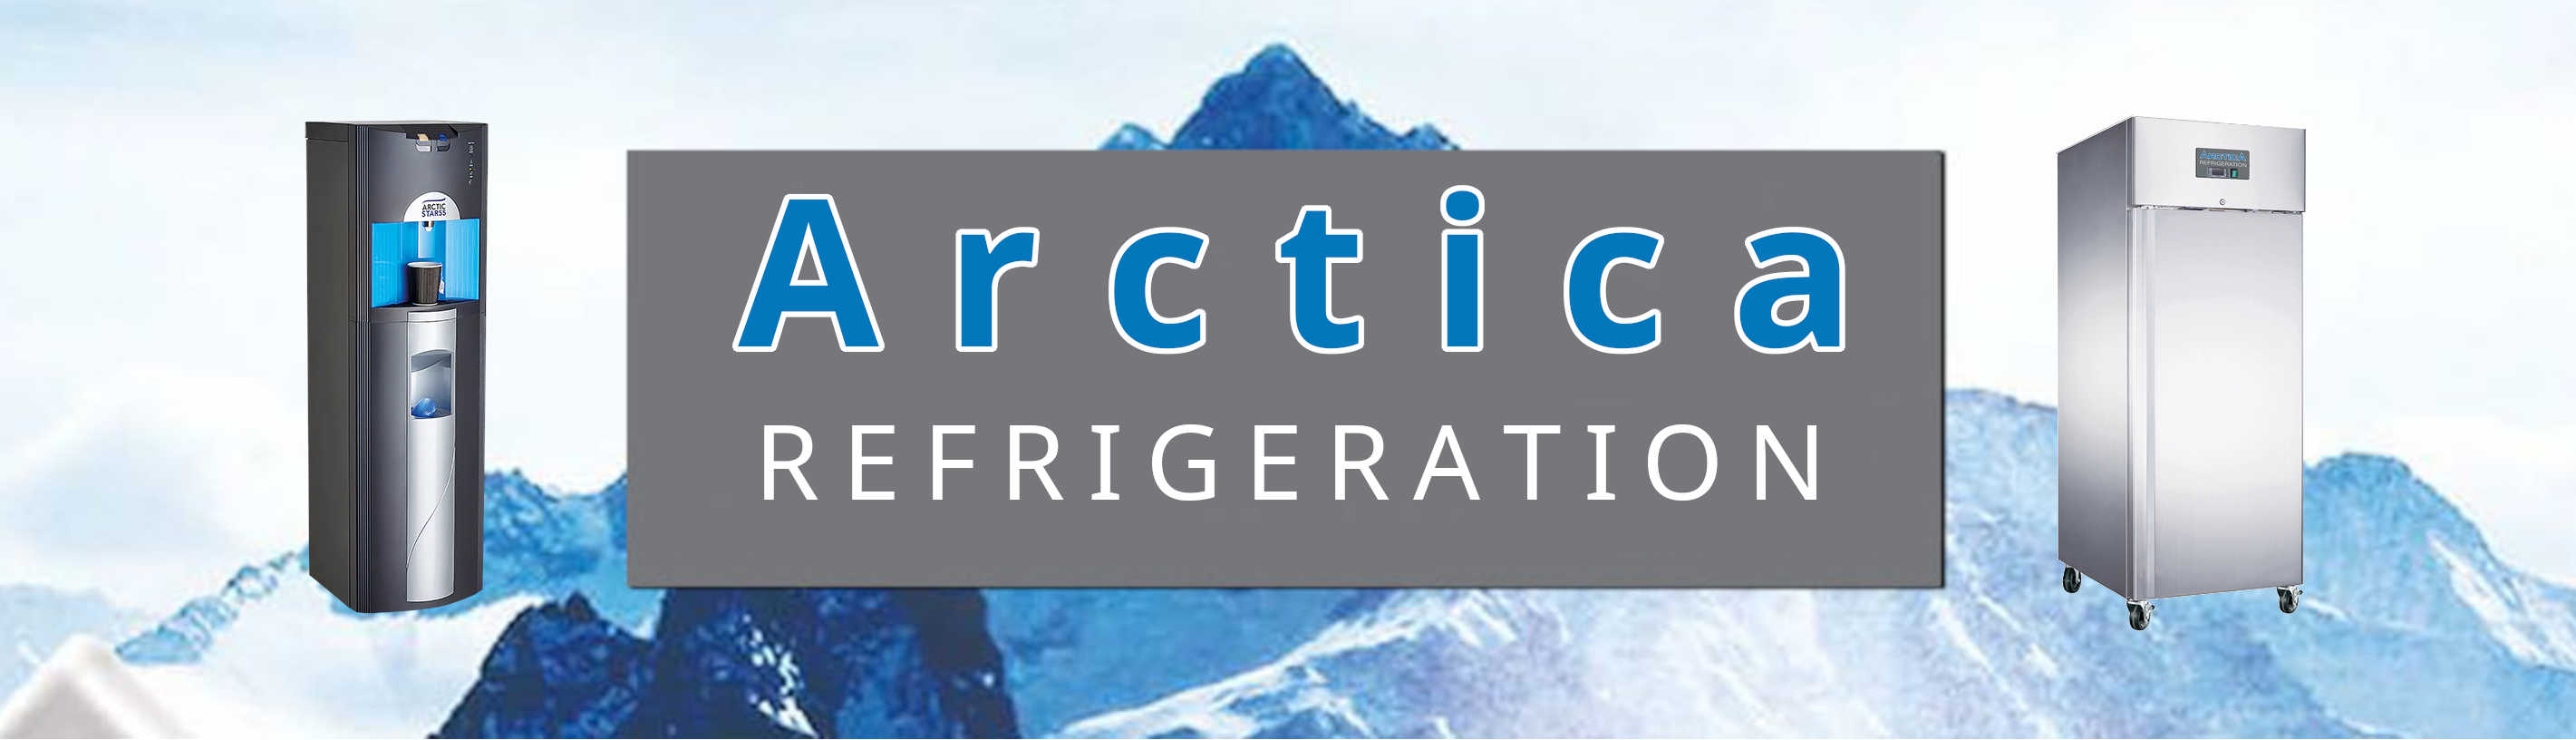 Arctica Refrigeration